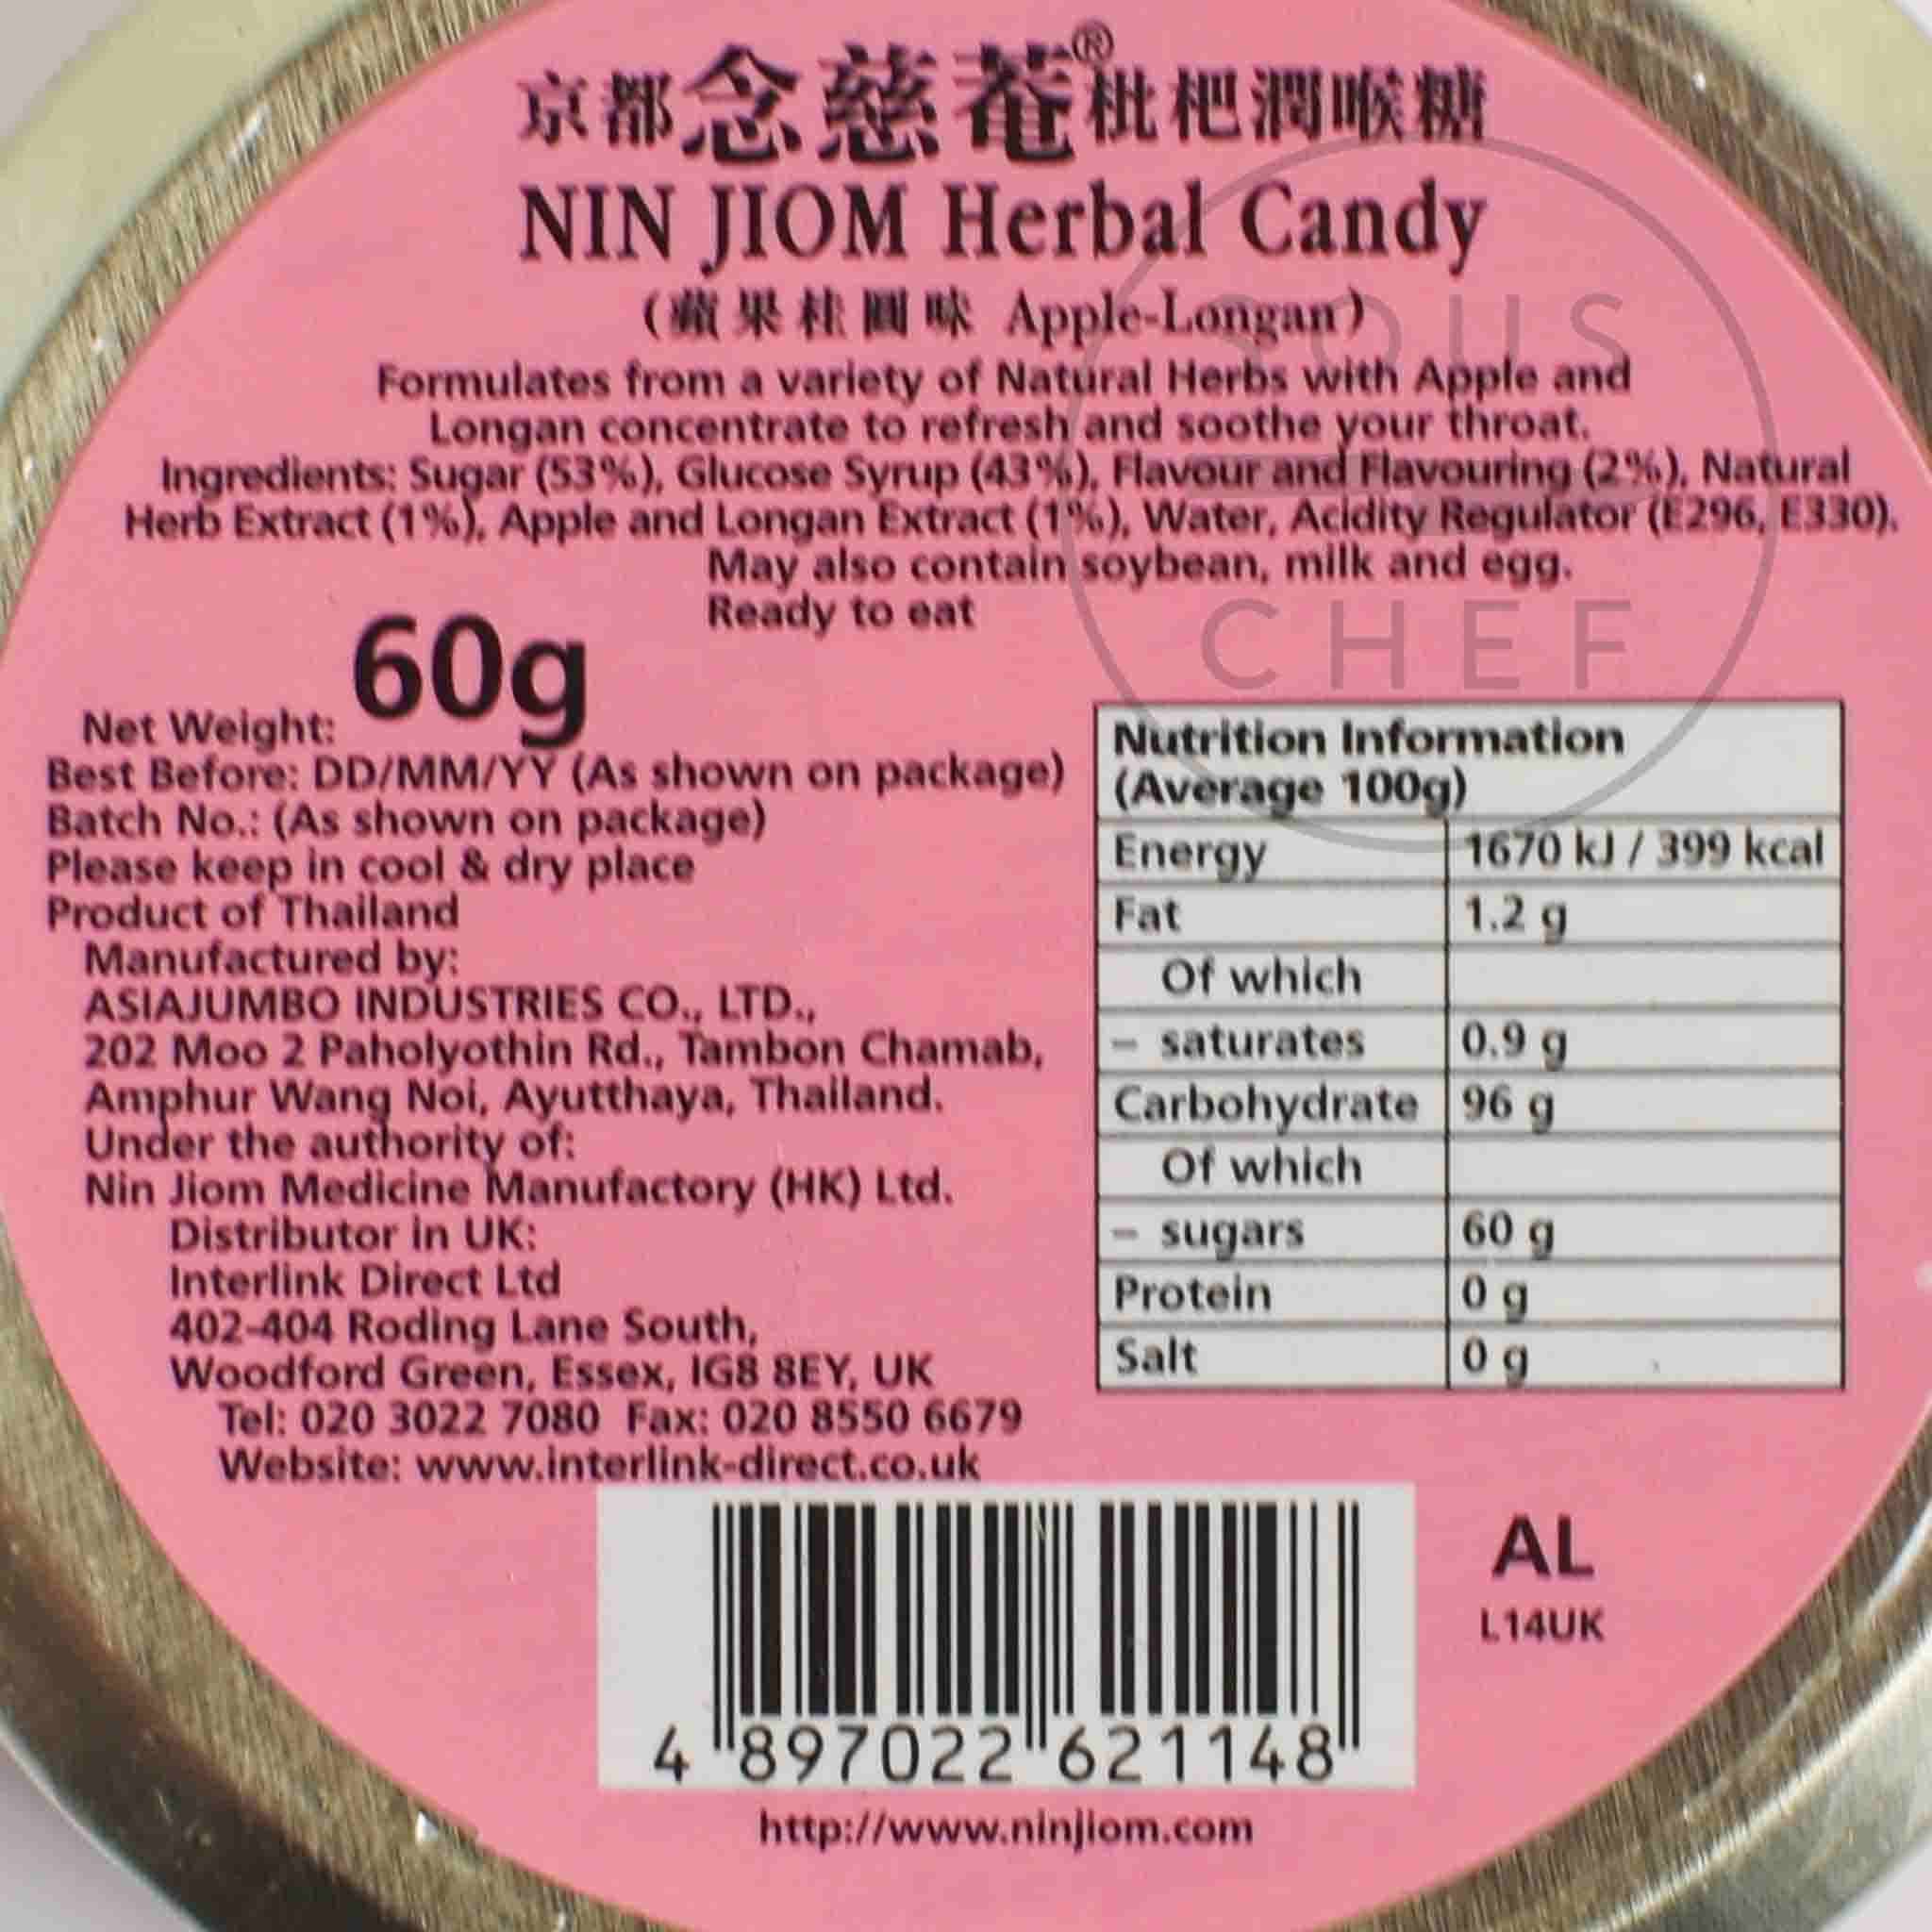 Apple & Longan Herbal Candy, 60g